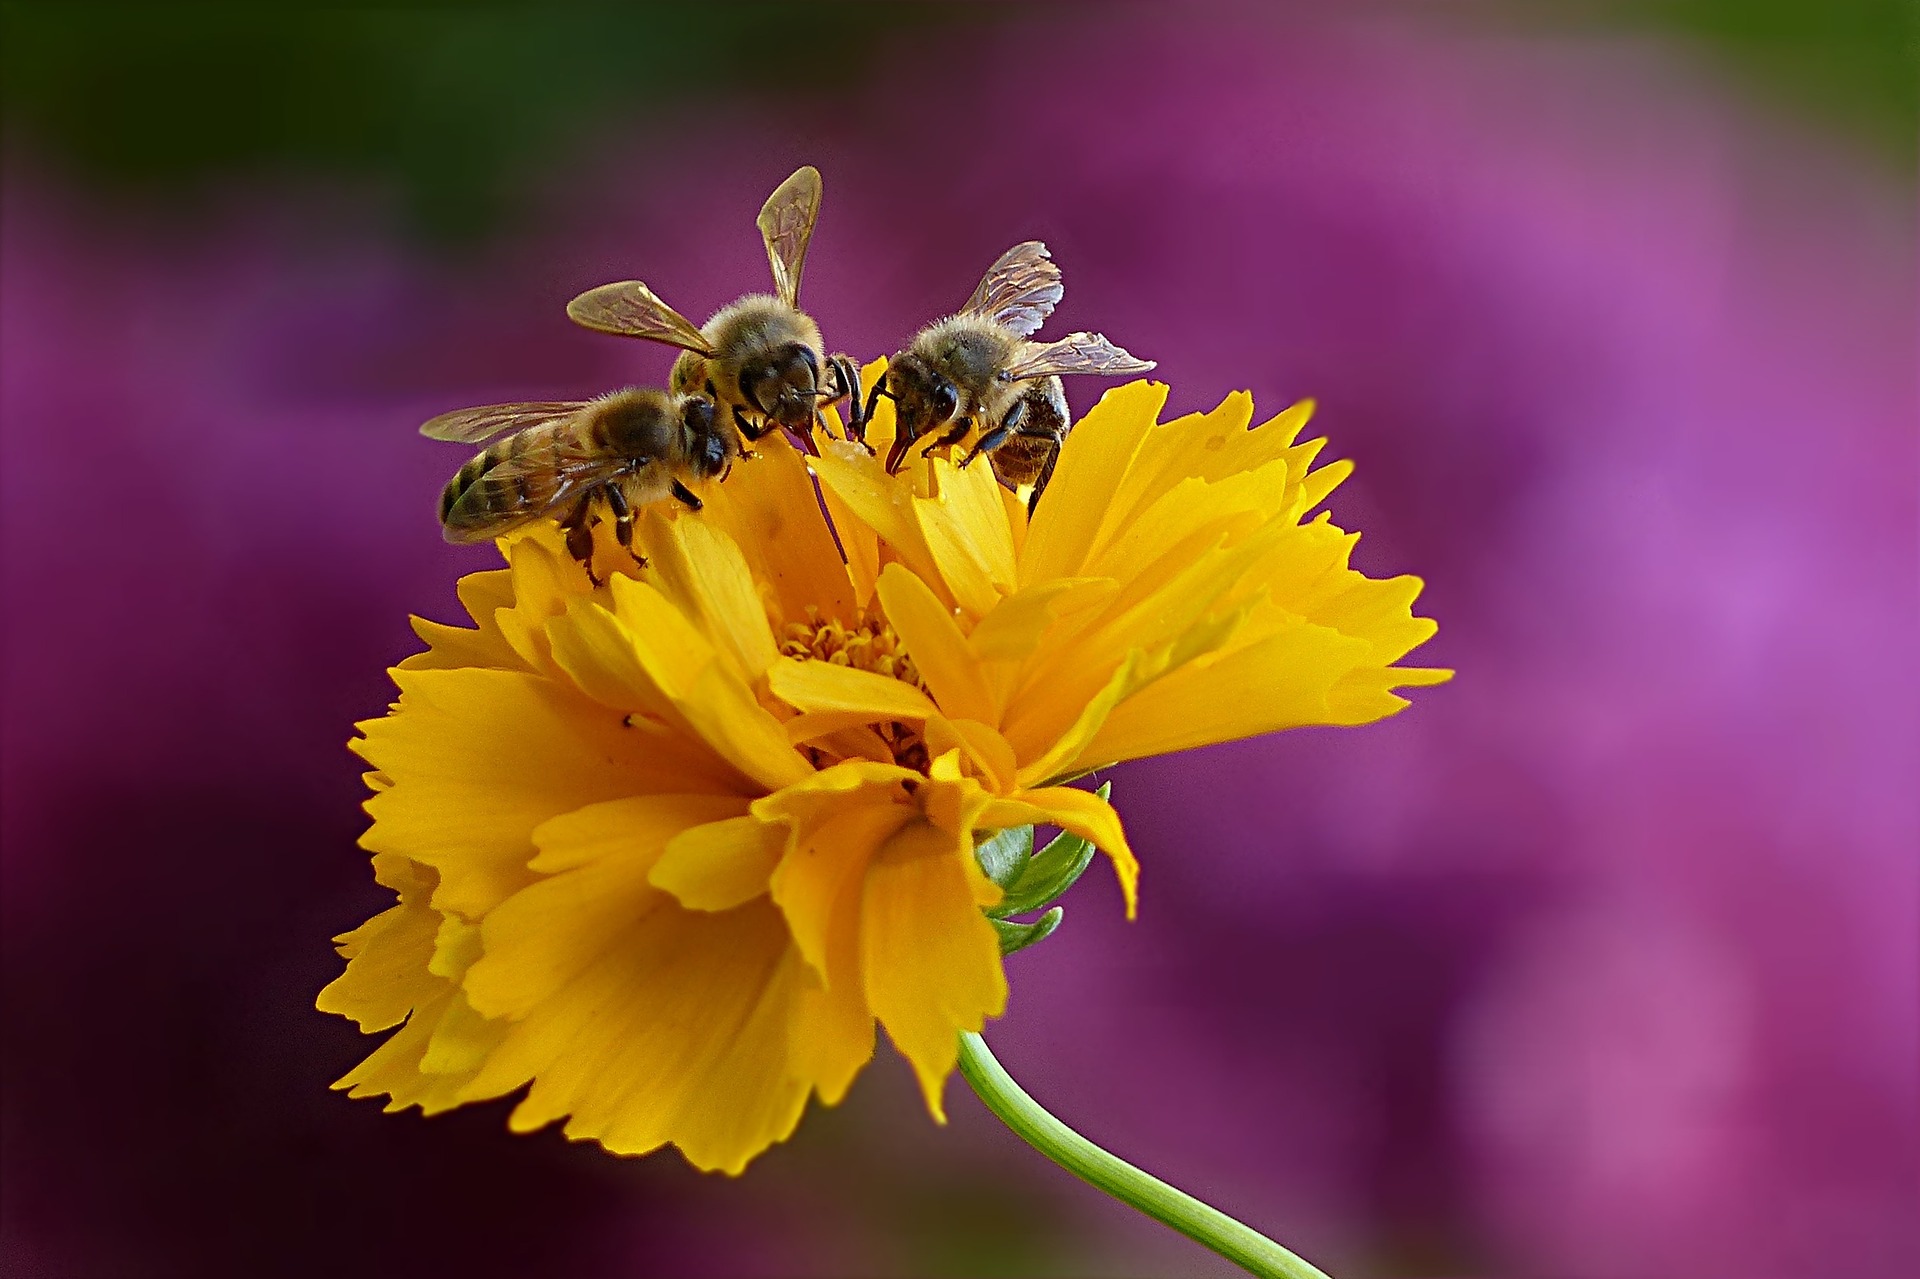 3 fleißige Bienen sitzen auf einer gelben Blume.